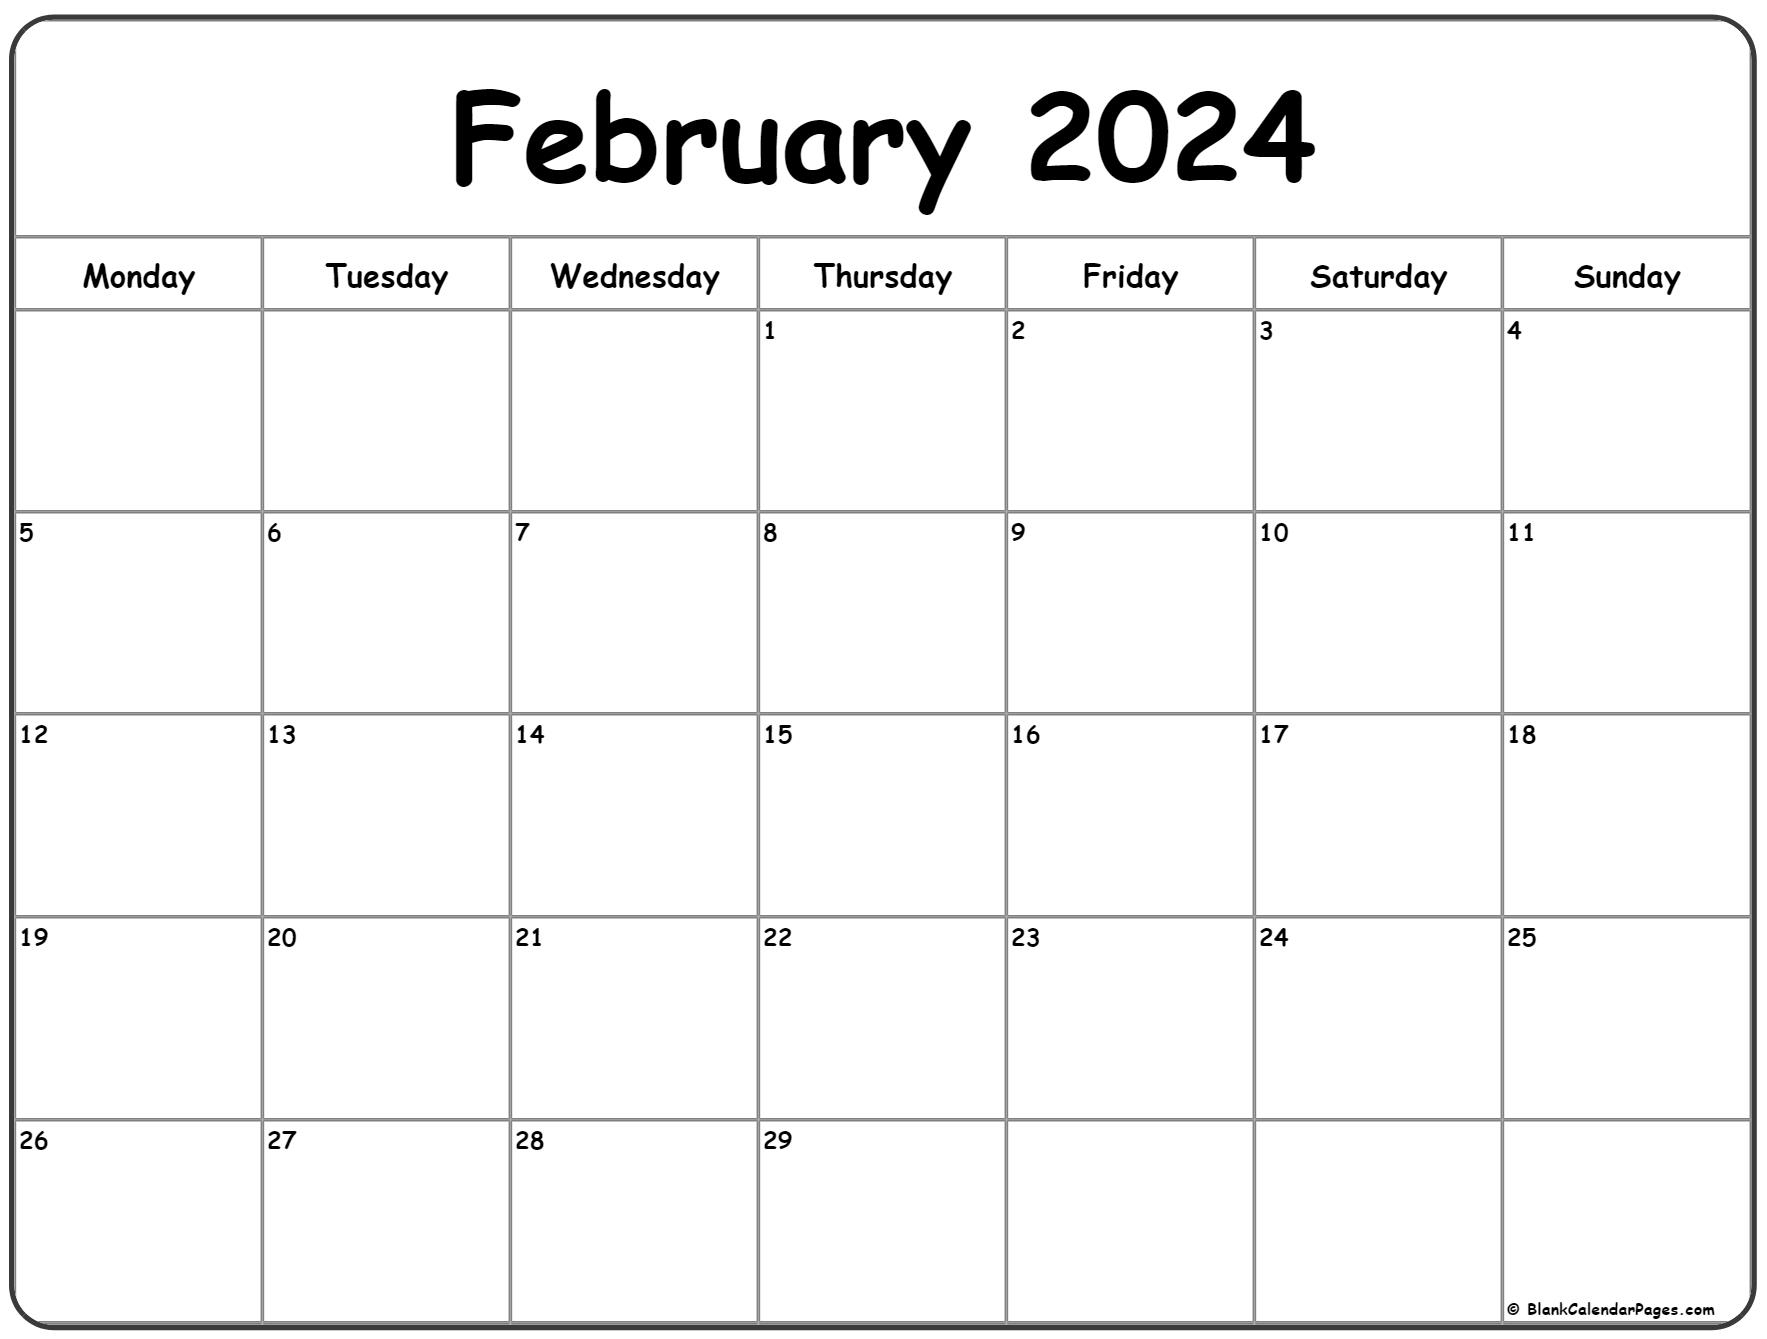 February 2024 Monday Calendar | Monday To Sunday for Calendar Printable February 2024